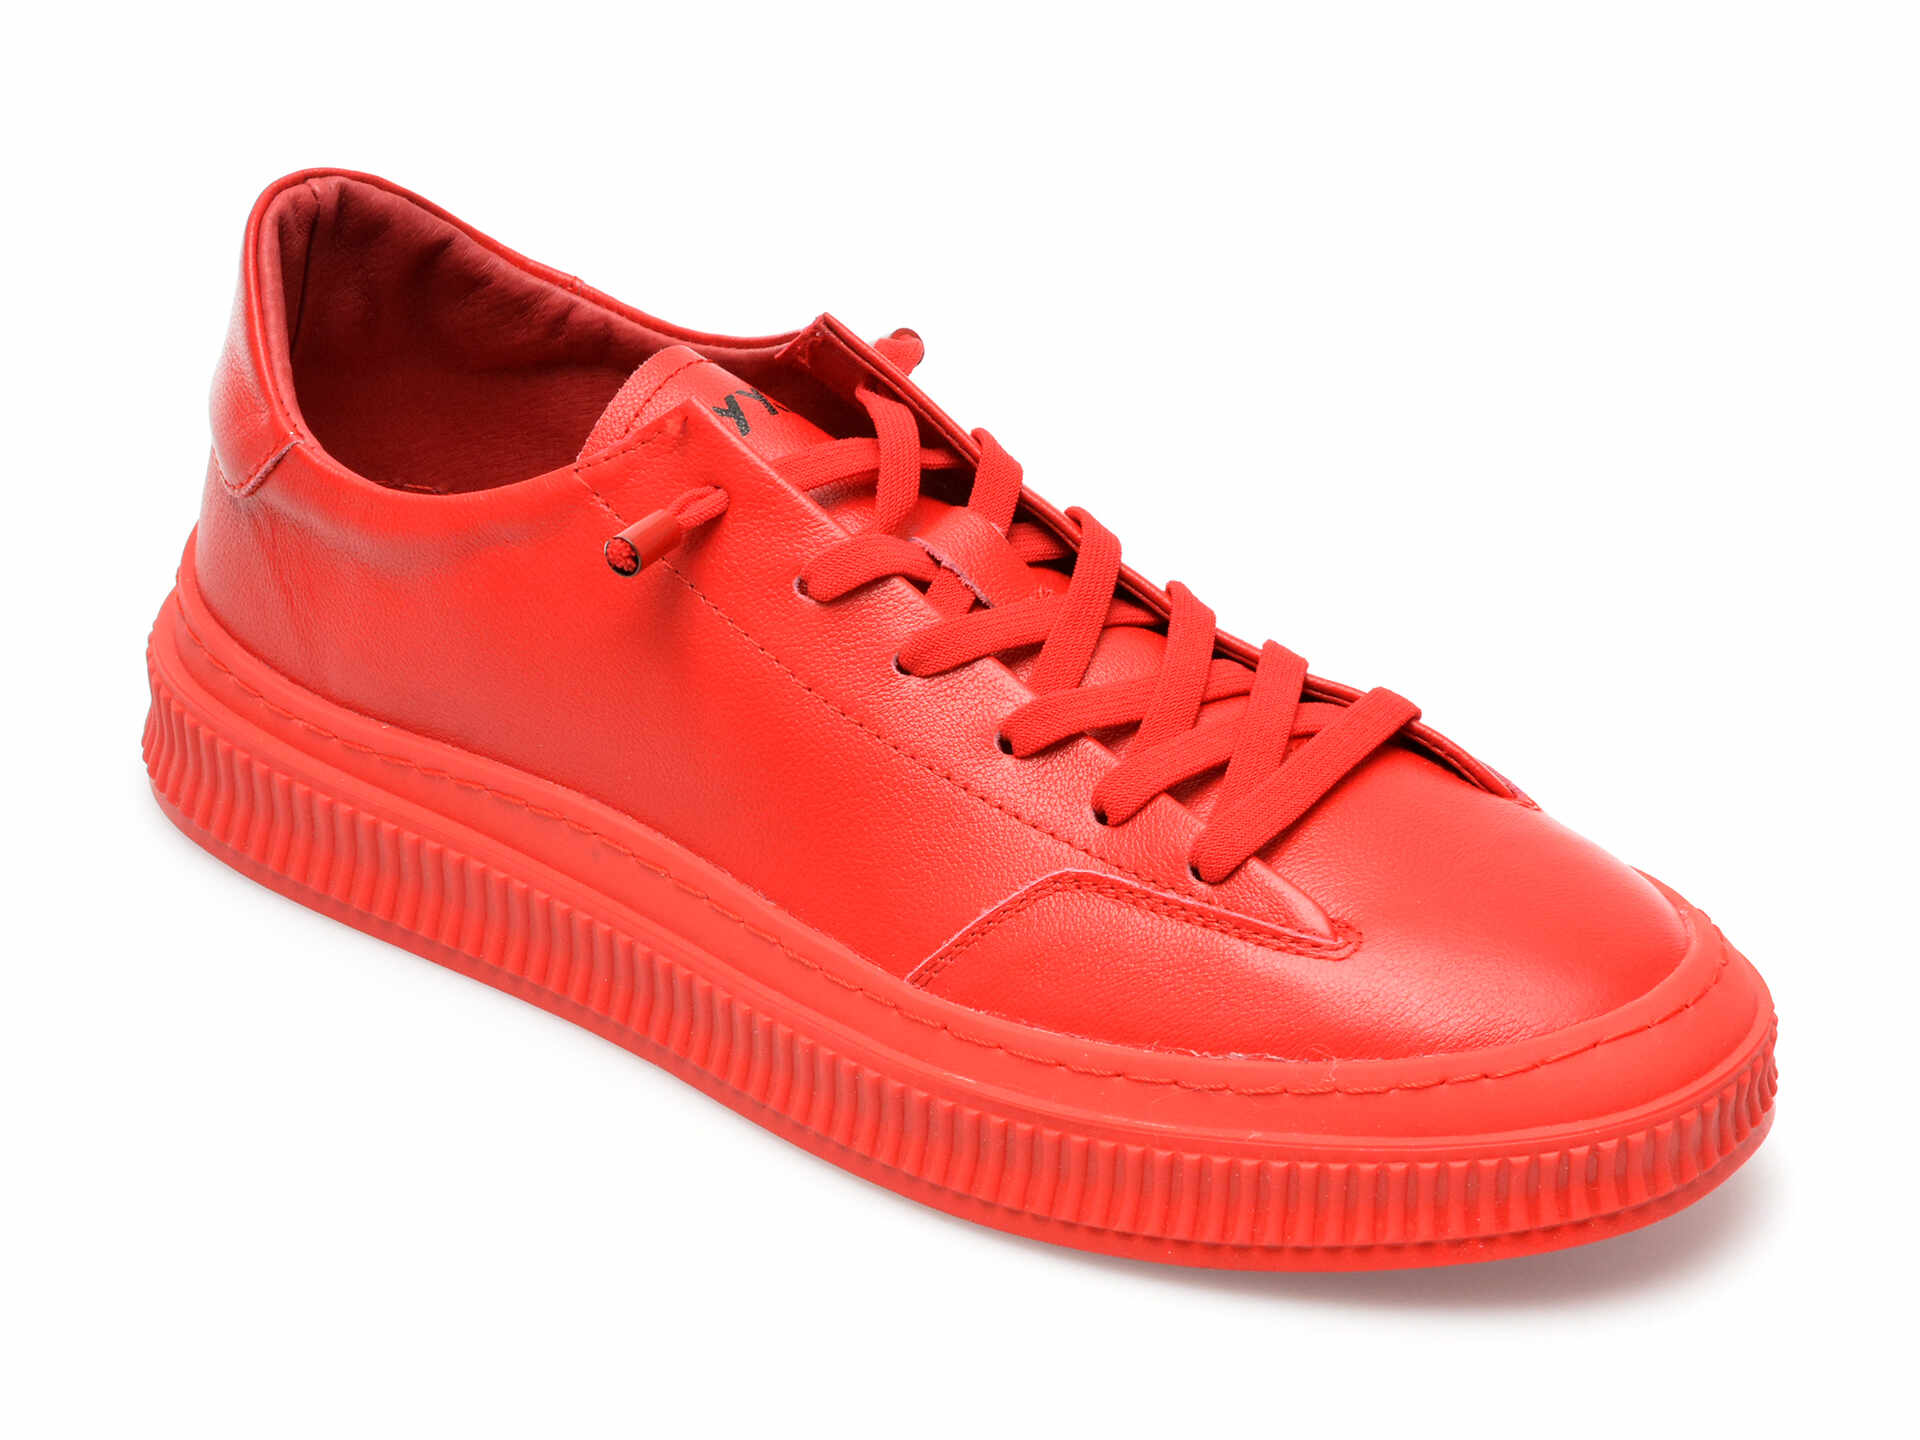 Pantofi GRYXX rosii, F037, din piele naturala